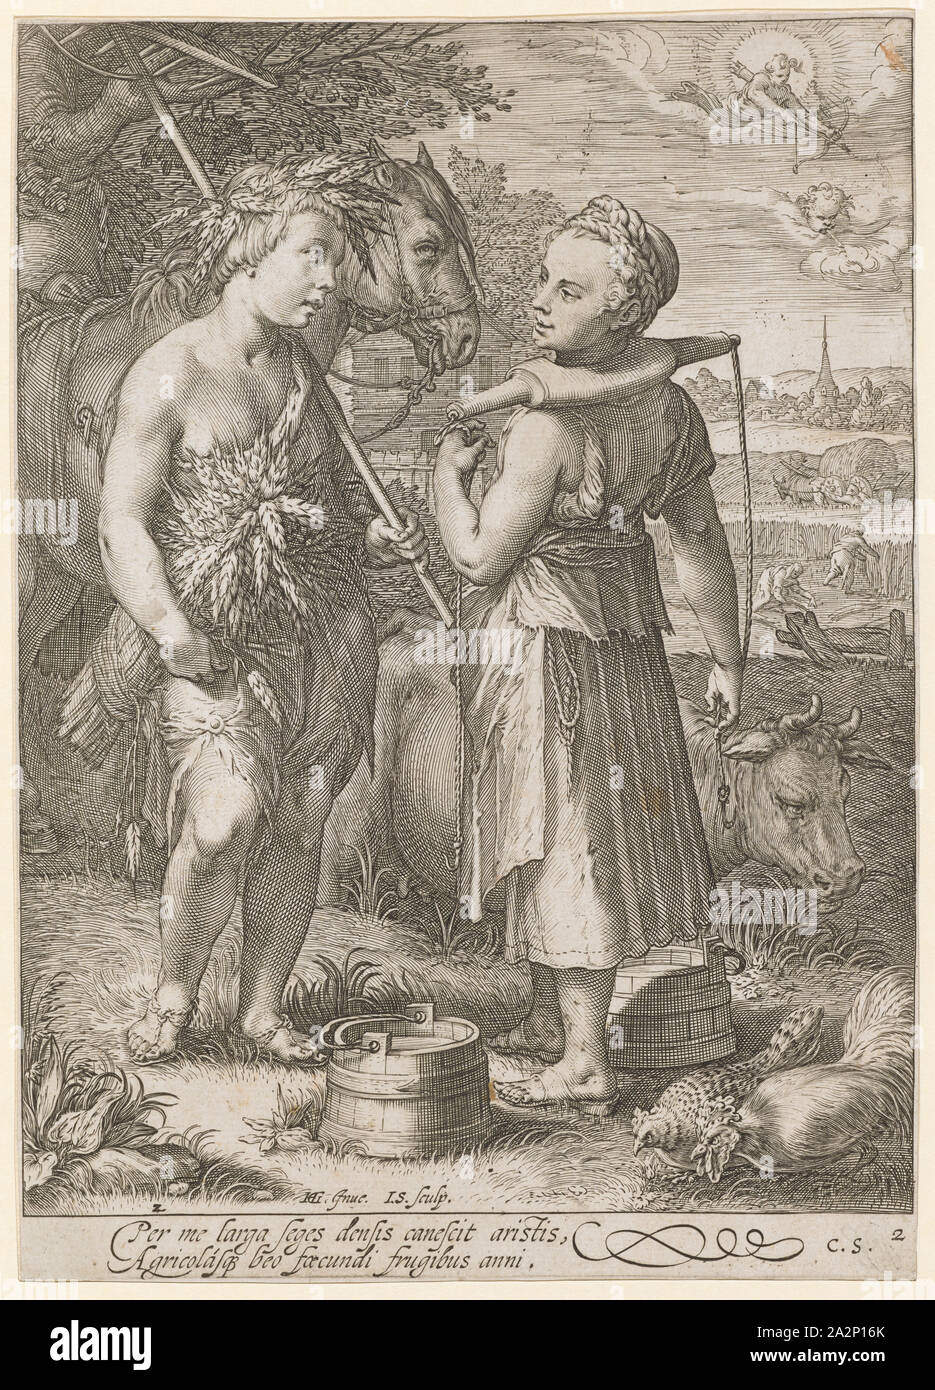 Im Sommer 1601 (vor 1652), Kupferstich, Blatt: 22,2 x 15,9 cm (innerhalb der Marge der Platte getrimmt), U l., nummeriert: 2, u,., M.L., gekennzeichnet: HG., [lig.] Inue., I. S., sculp,., unter dem Feld "Bild: Pro mich Larga seges densis canescit aristis, Agricolasq [ue] beo foecundi frugibus Anni., u,., a., nummeriert und Monogrammiert: 2, C.S., Jan Saenredam, Stecher, Zaandam 1565 - 1607 Assendelft, Hendrick Goltzius, Erfinder, Mühlbrecht 1558 - 1617 Haarlem, Claes Jansz. Visscher, Verleger, Amsterdam 1586/87 - 1652 Amsterdam Stockfoto